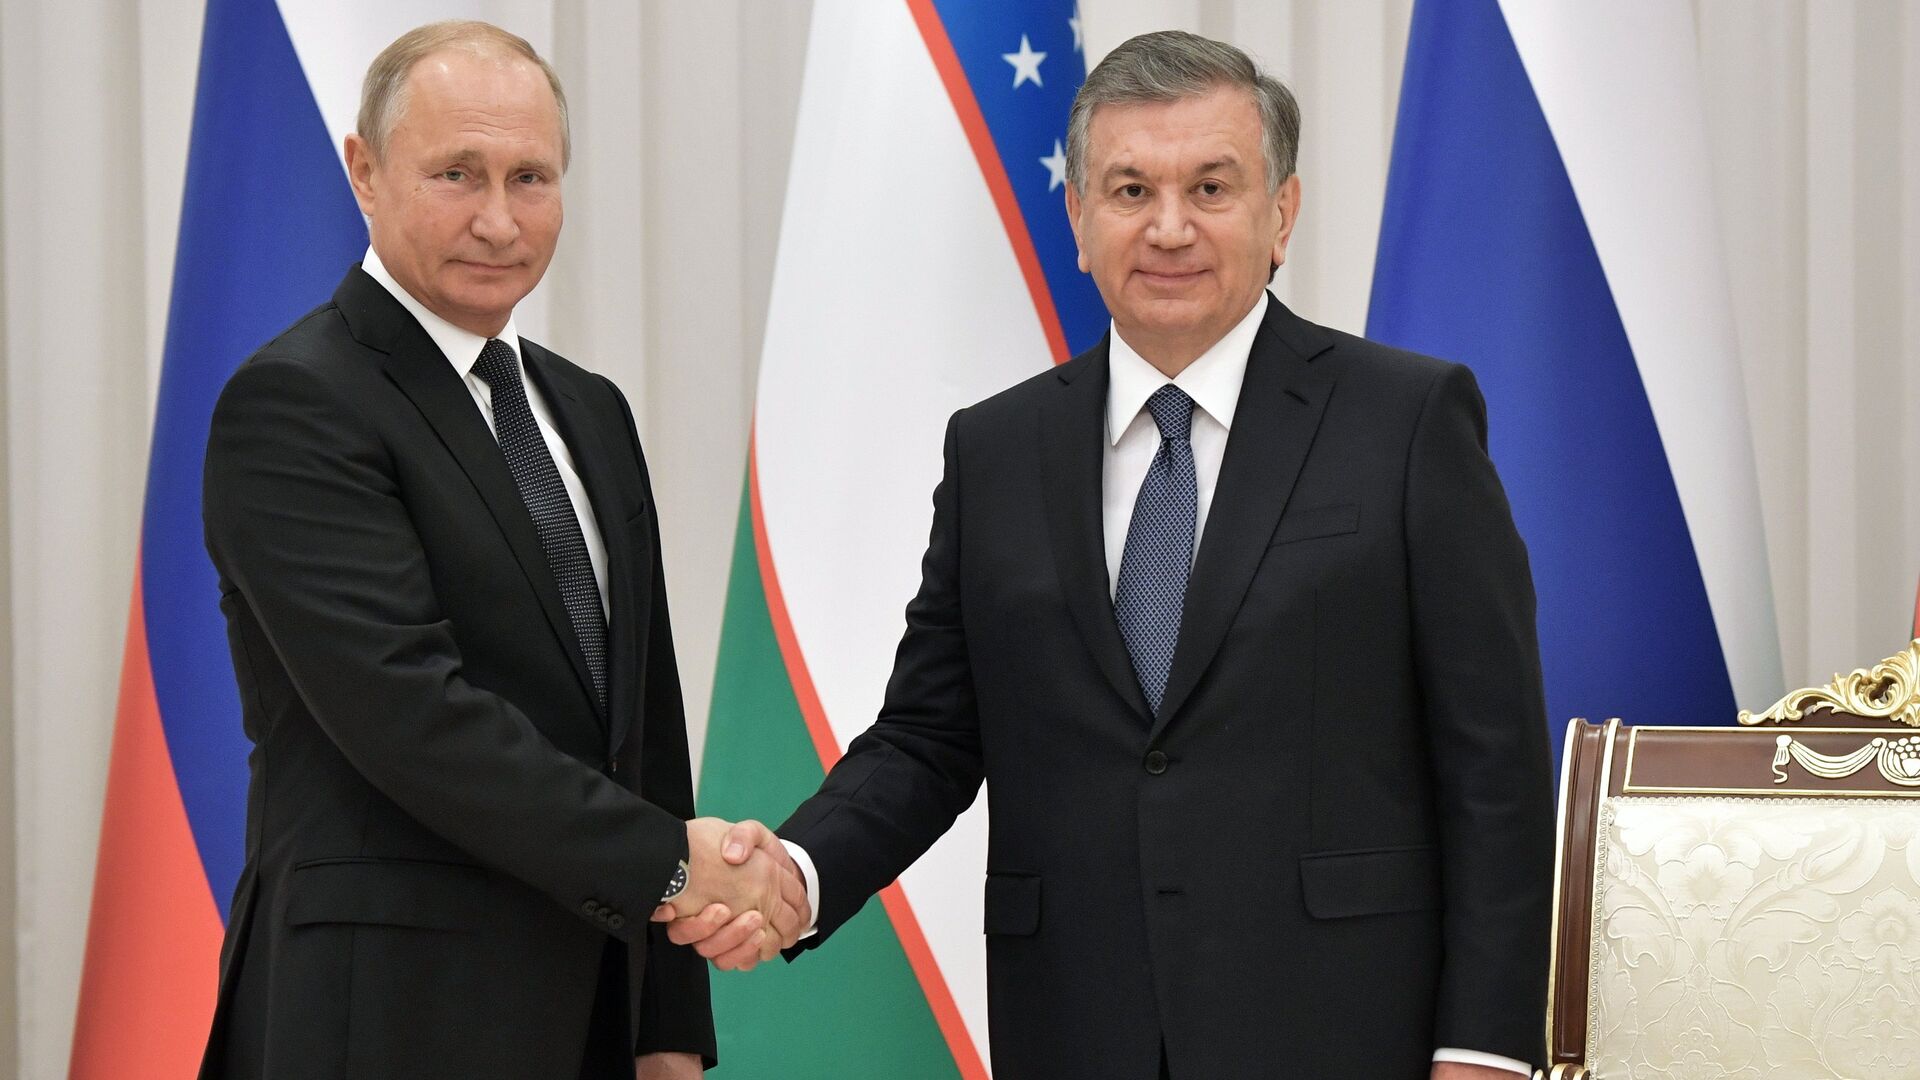 Шавкат Мирзиёев и Владимир Путин обсудили дальнейшее сотрудничество между странами 